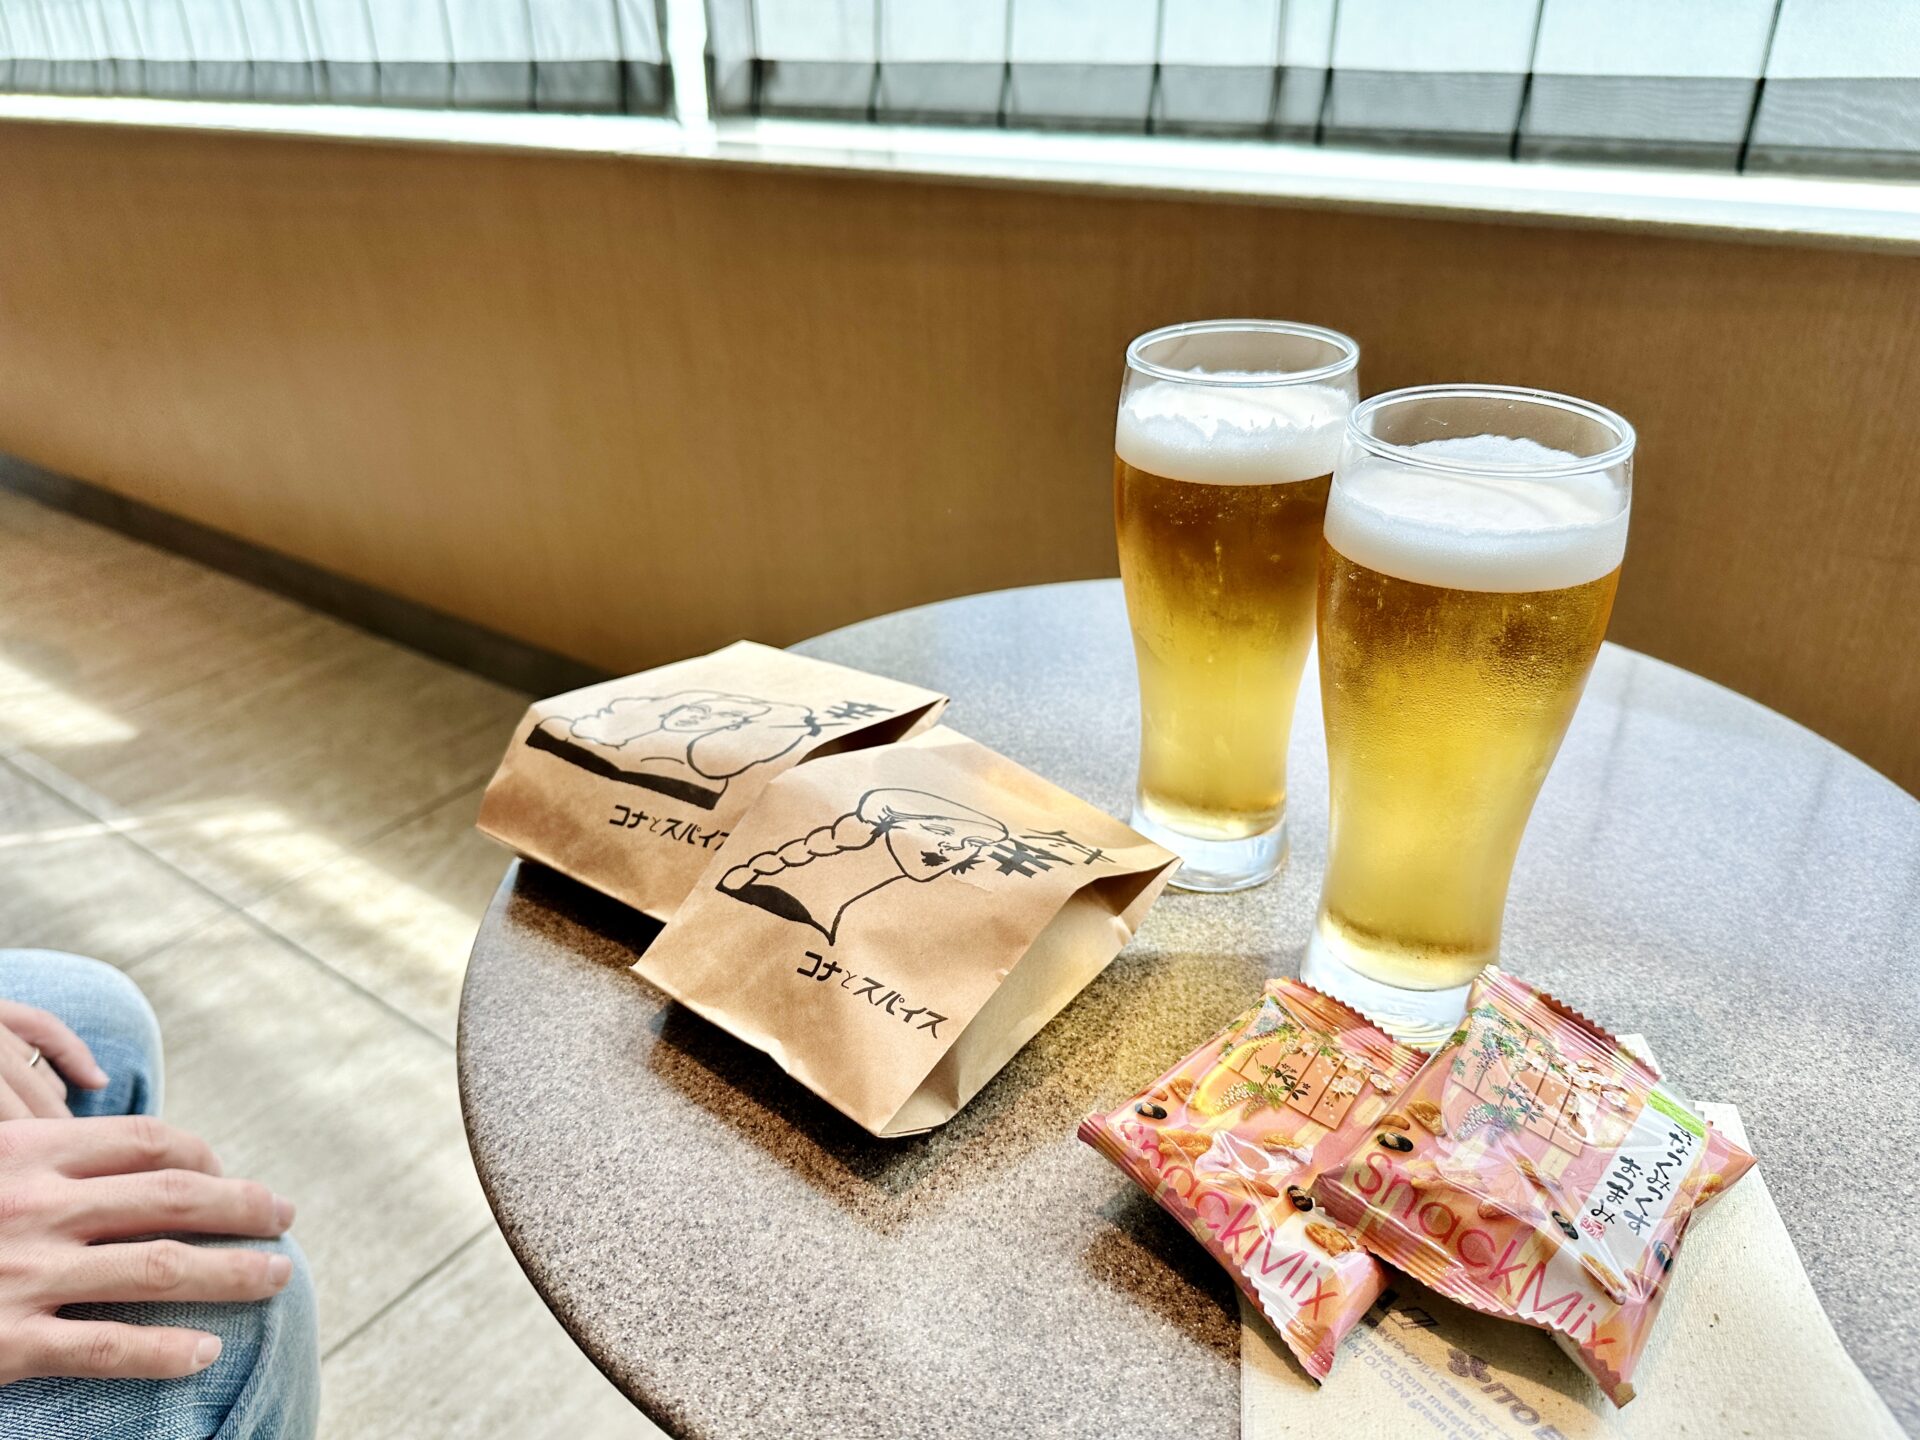 【ブログ旅行記】はじめての宮古島旅行 3泊4日ゆったりモデルコース コナとスパイスのカレーパン